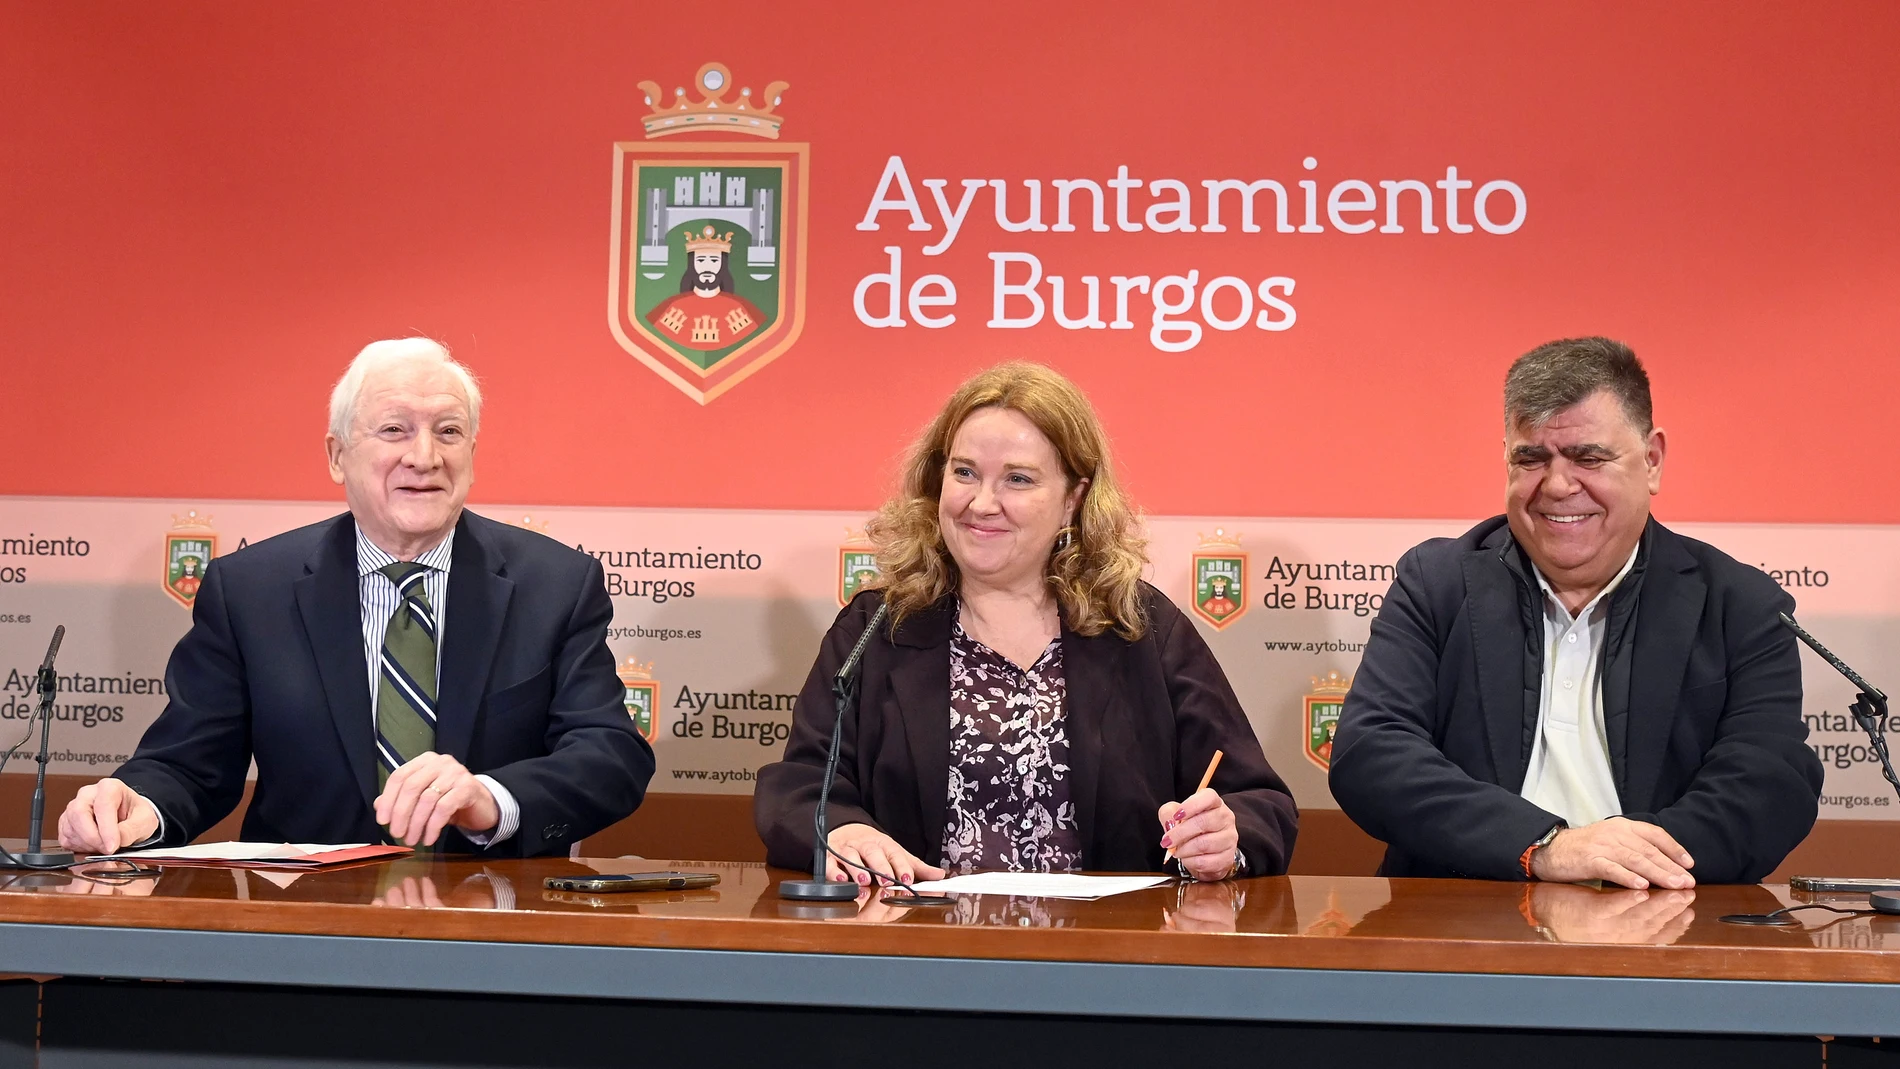 La alcaldesa de Burgos, Cristina Ayala, y el presidente de la Cámara de Comercio e Industria de Burgos, Antonio Méndez Pozo, acompañados del concejal de Área de Infraestructuras, Juan Manuel Manso, presentan un proyecto de comunidades energéticas en la ciudad